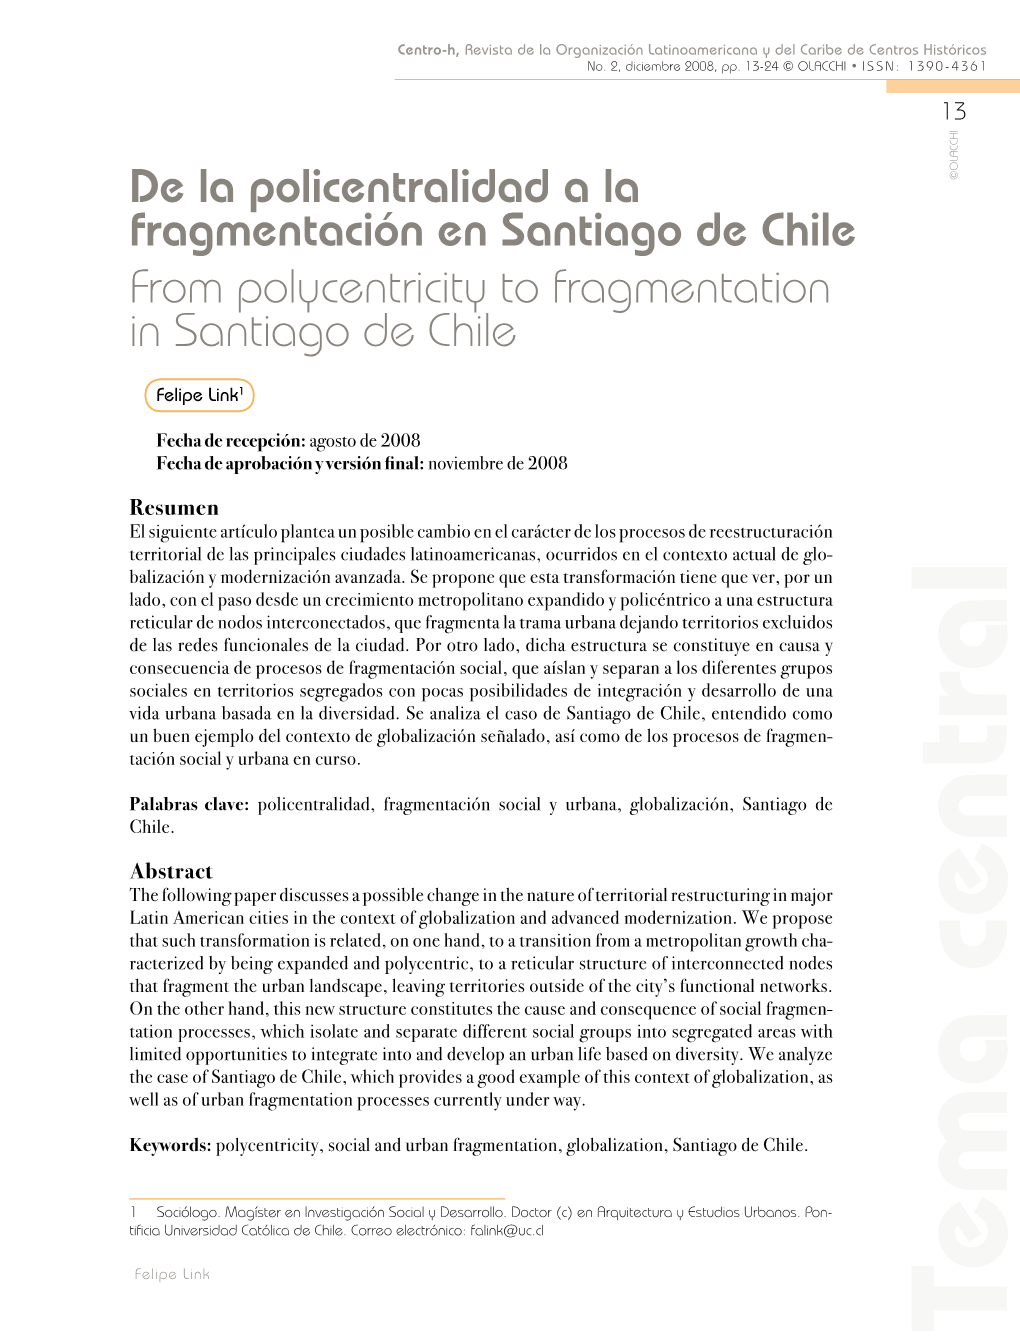 De La Policentralidad a La Fragmentación En Santiago De